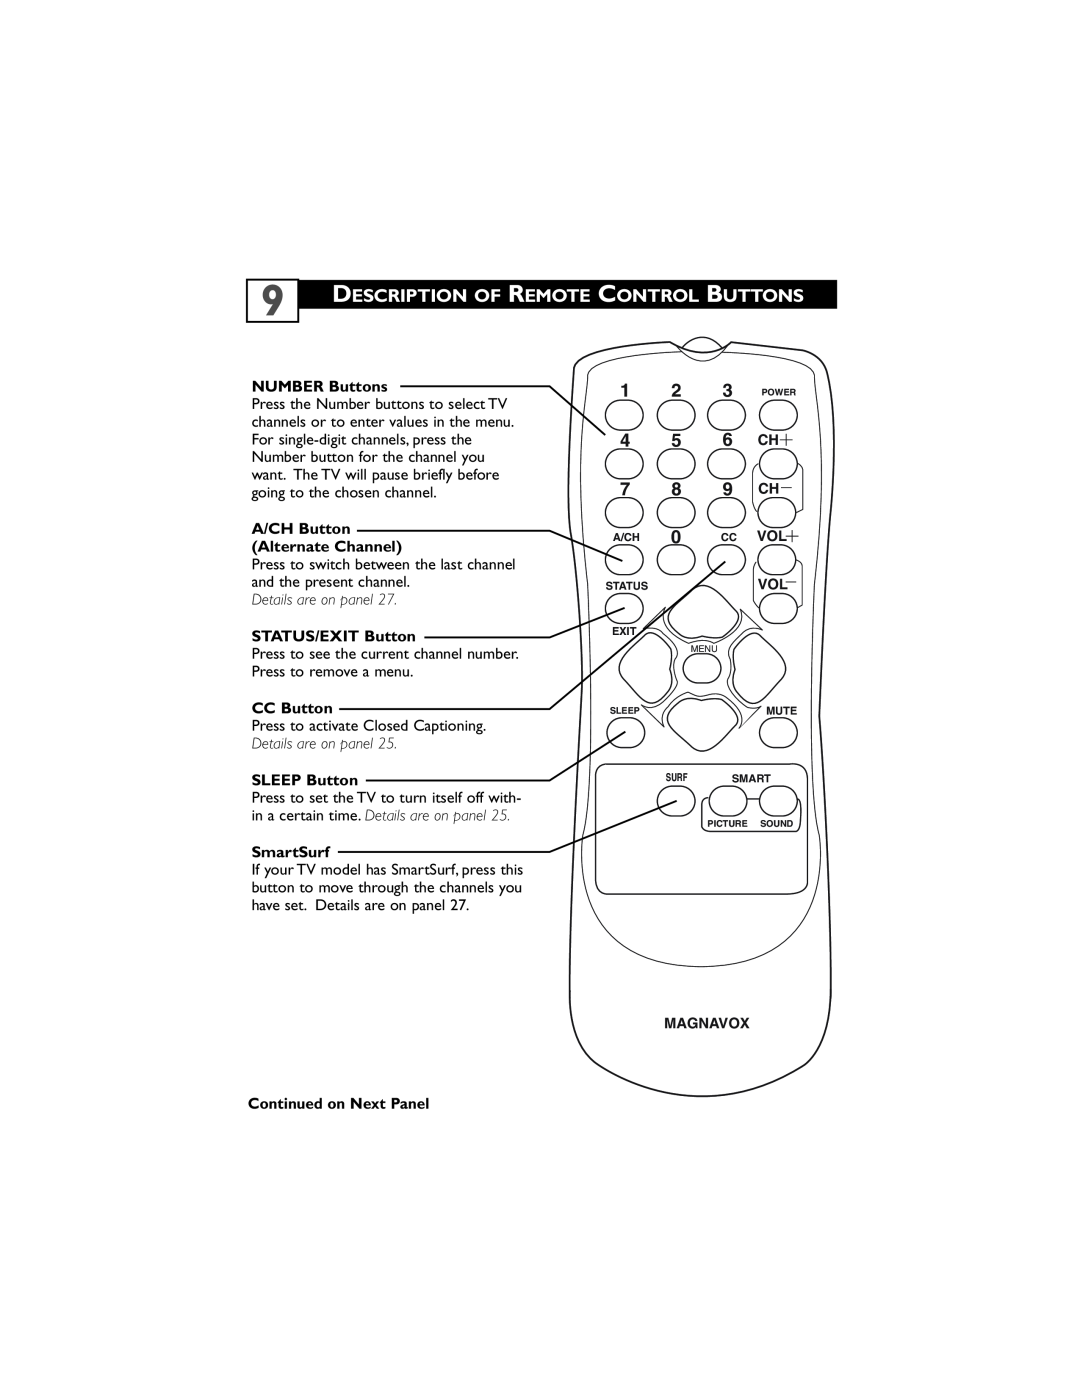 Magnavox 32MT3305/17 Description Of Remote Control Buttons, 1 2 3 POWER 4 5 6 CH 7 8 9 CH, NUMBER Buttons, CC Button 